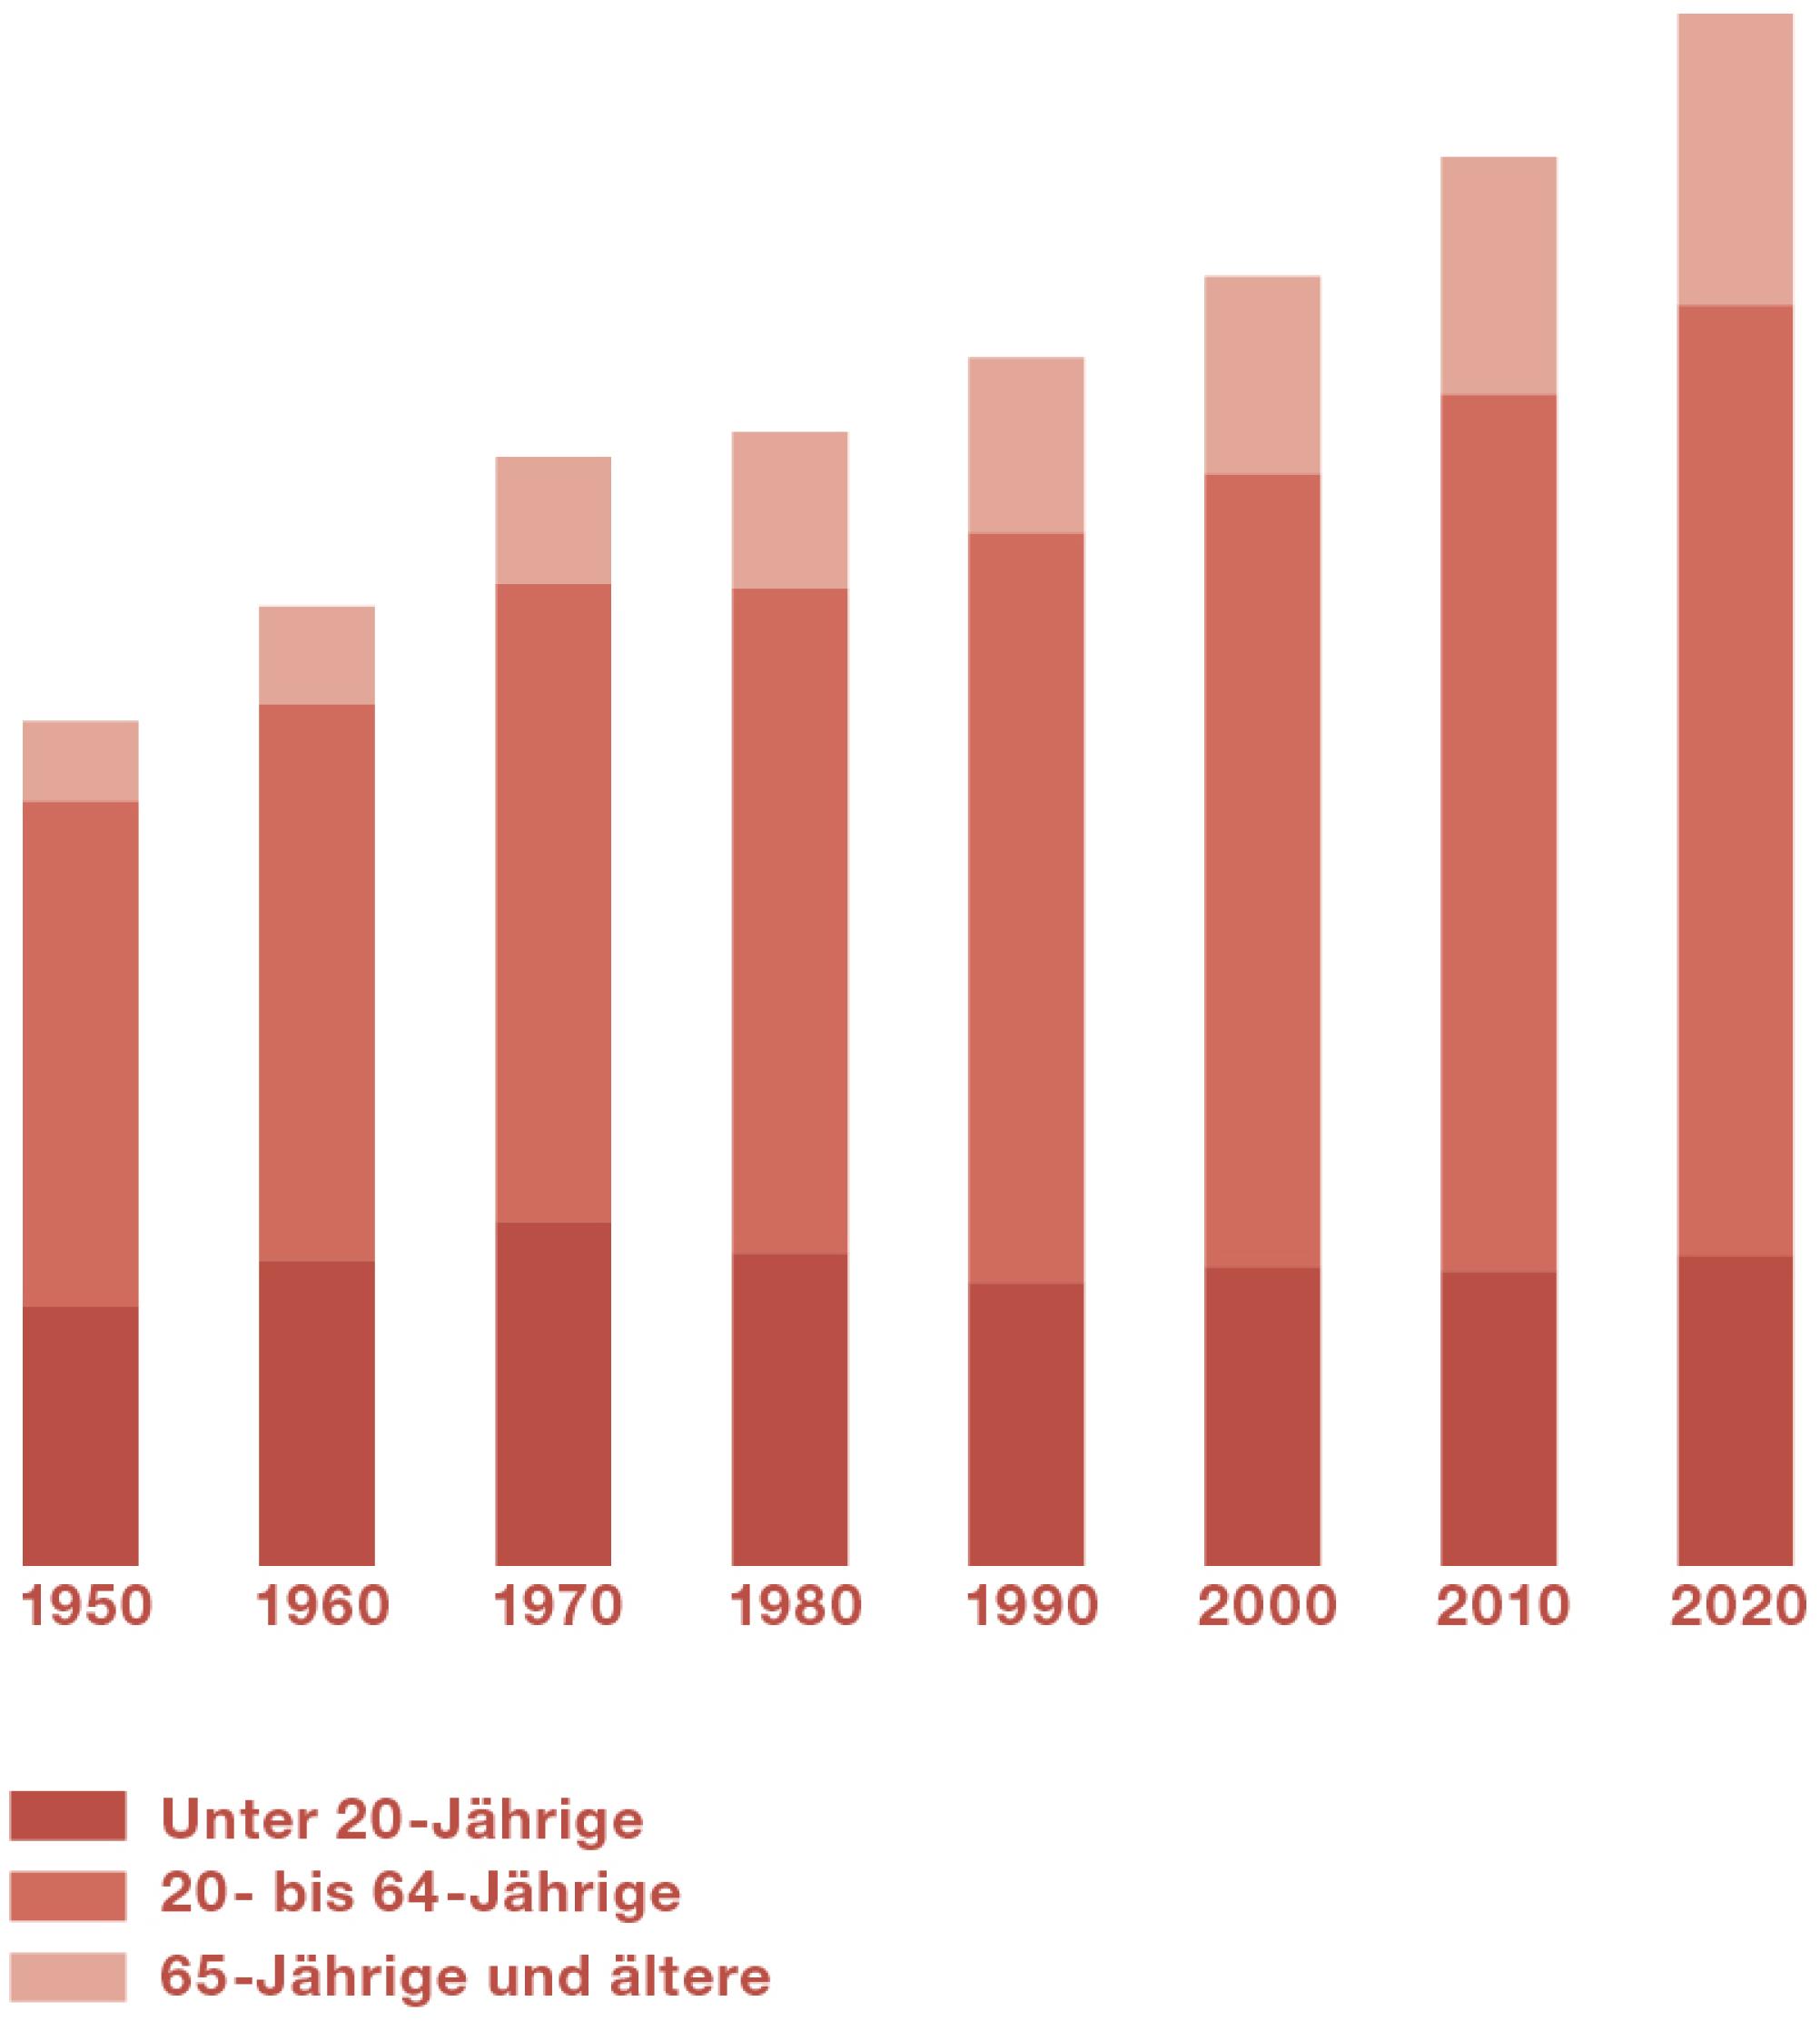 Die Infografik zeigt, wie sich die Bevölkerung zwischen 1950 und 2020 verändert hat: Der Anteil älterer Menschen hat zugenommen, der Anteil jüngerer Menschen hat abgenommen.